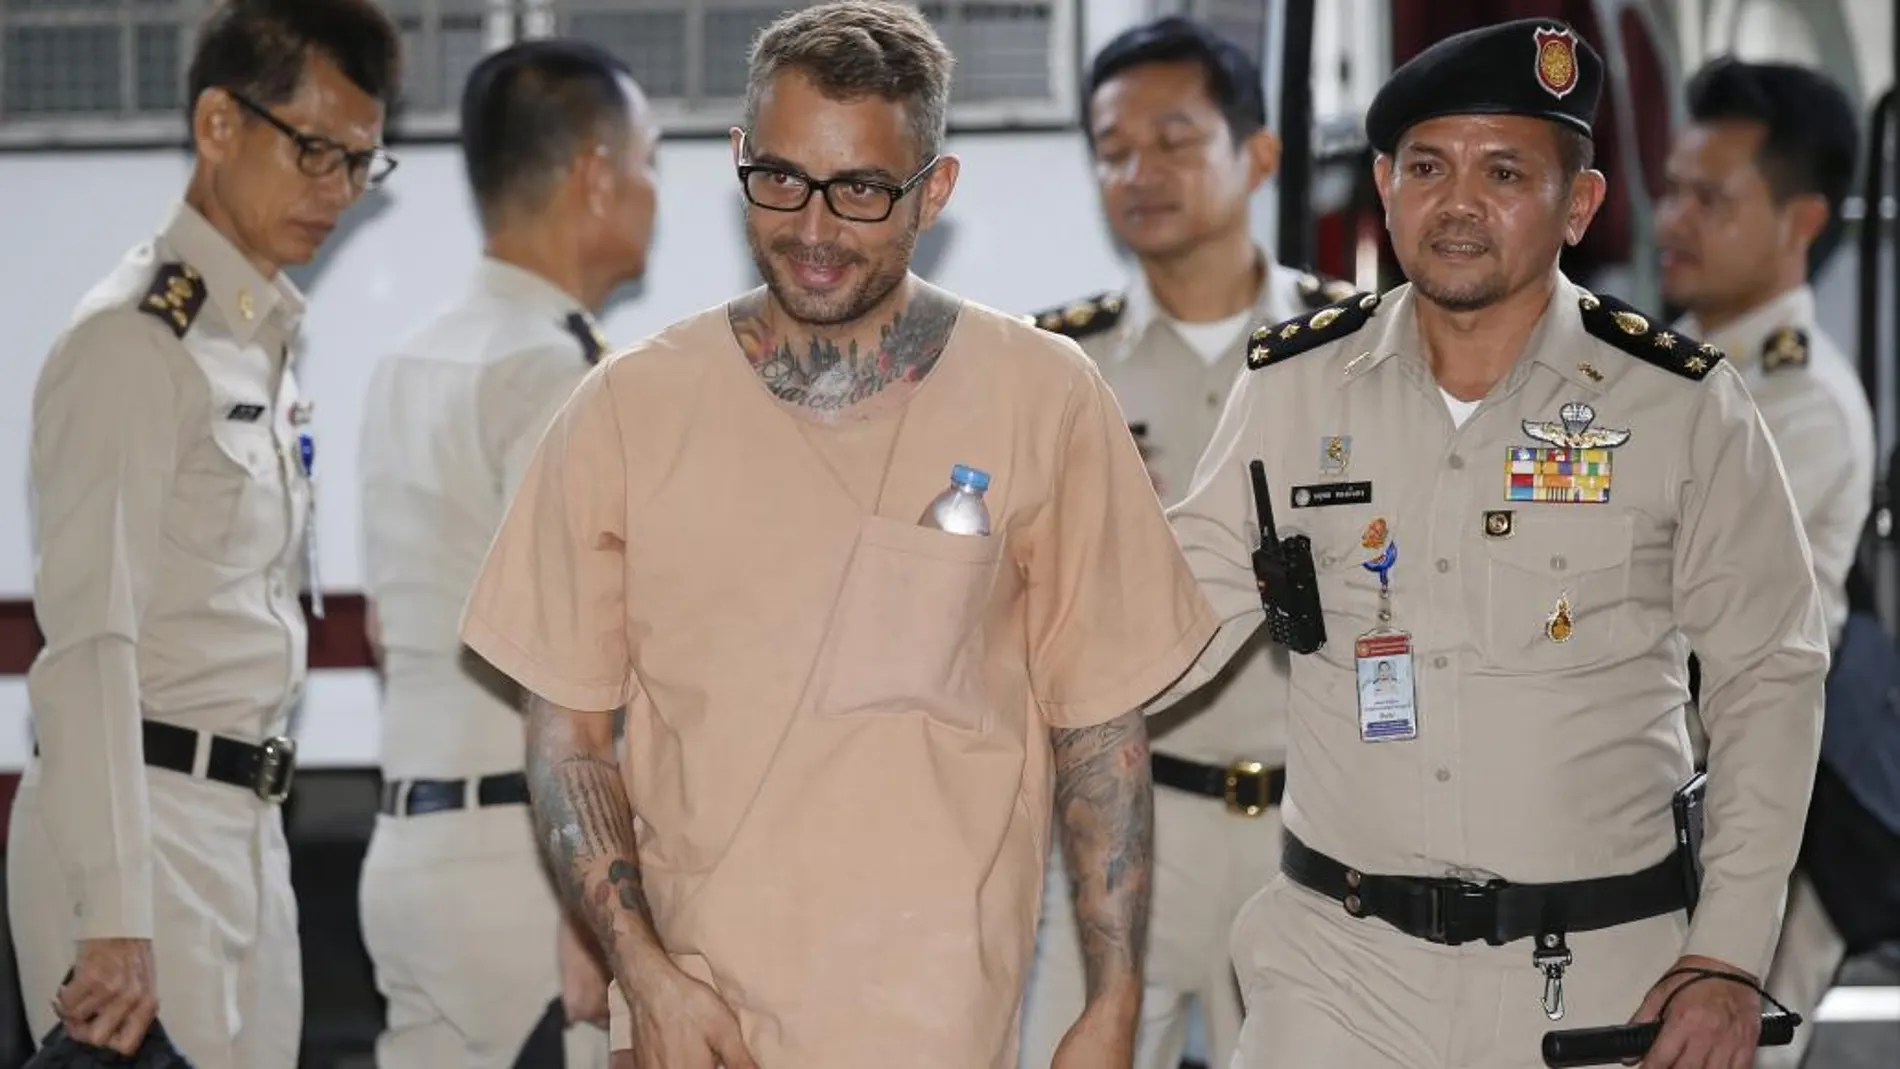 El español Artur Segarra (c) a su llegada a la Corte Criminal de Tailandia